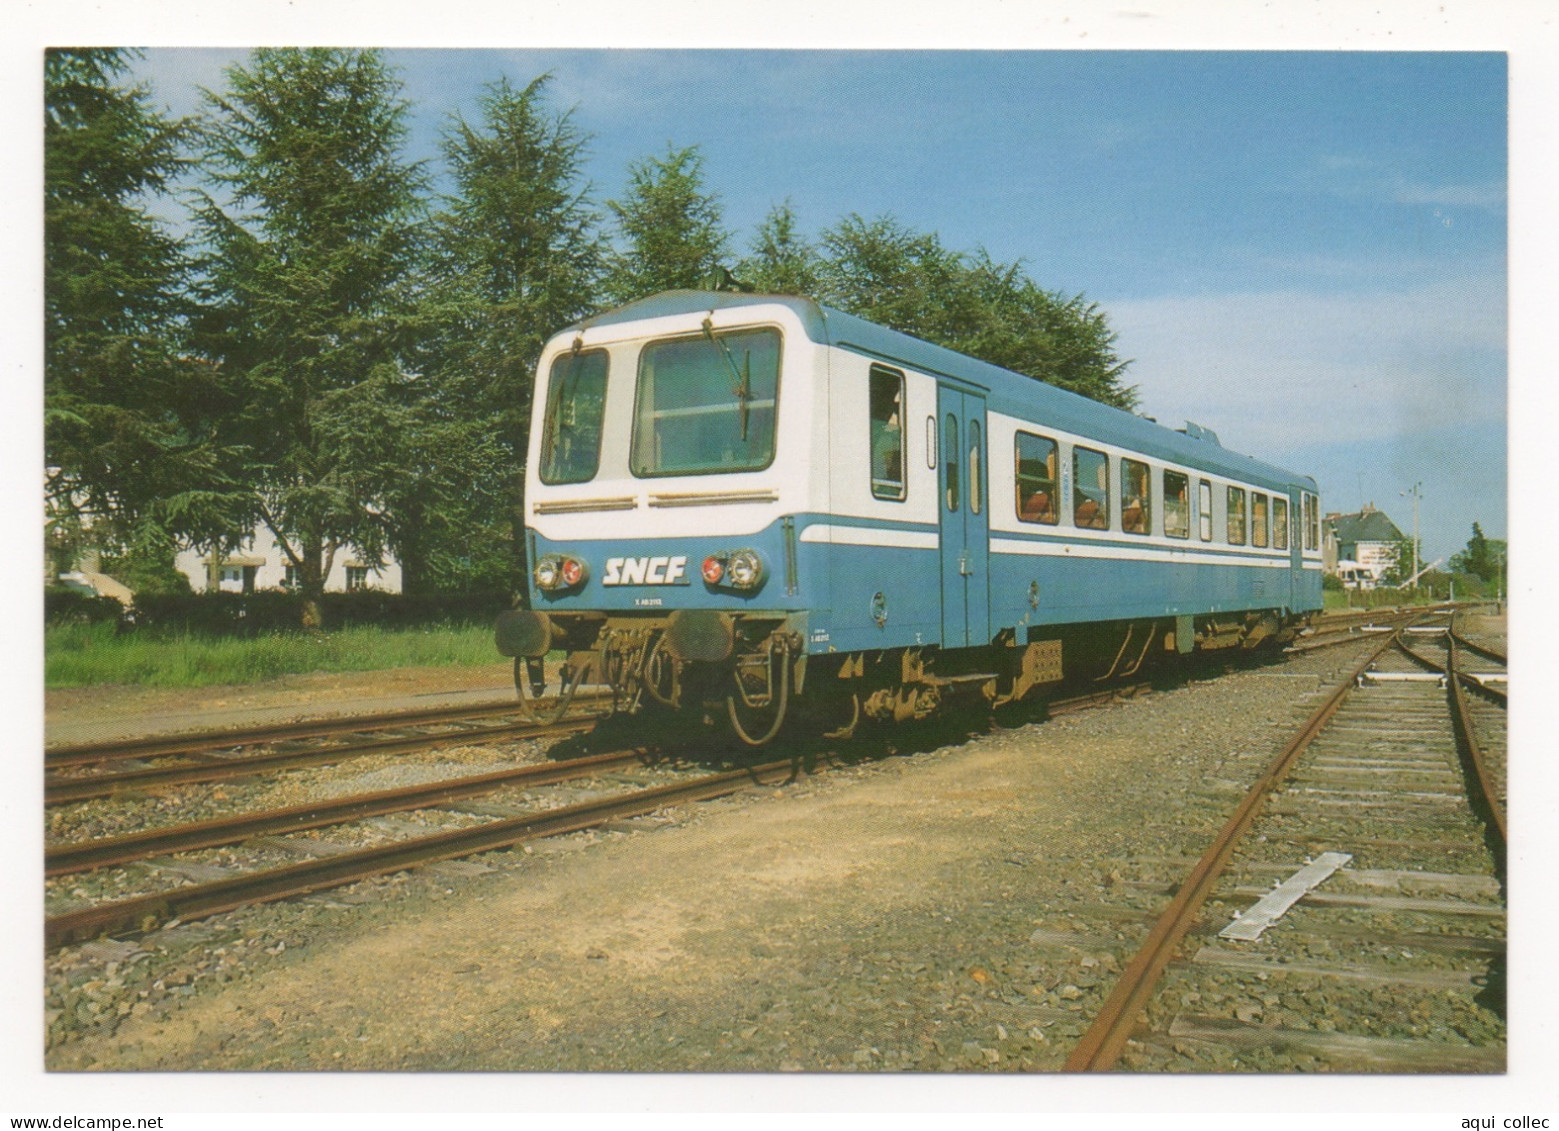 RETIERS (35) LIGNE DE RENNES À NANTES PAR CHÂTEAUBRIANT - AUTORAIL X 2100 MANOEUVRANT EN GARE - LE 26 MAI 1986 - Trains